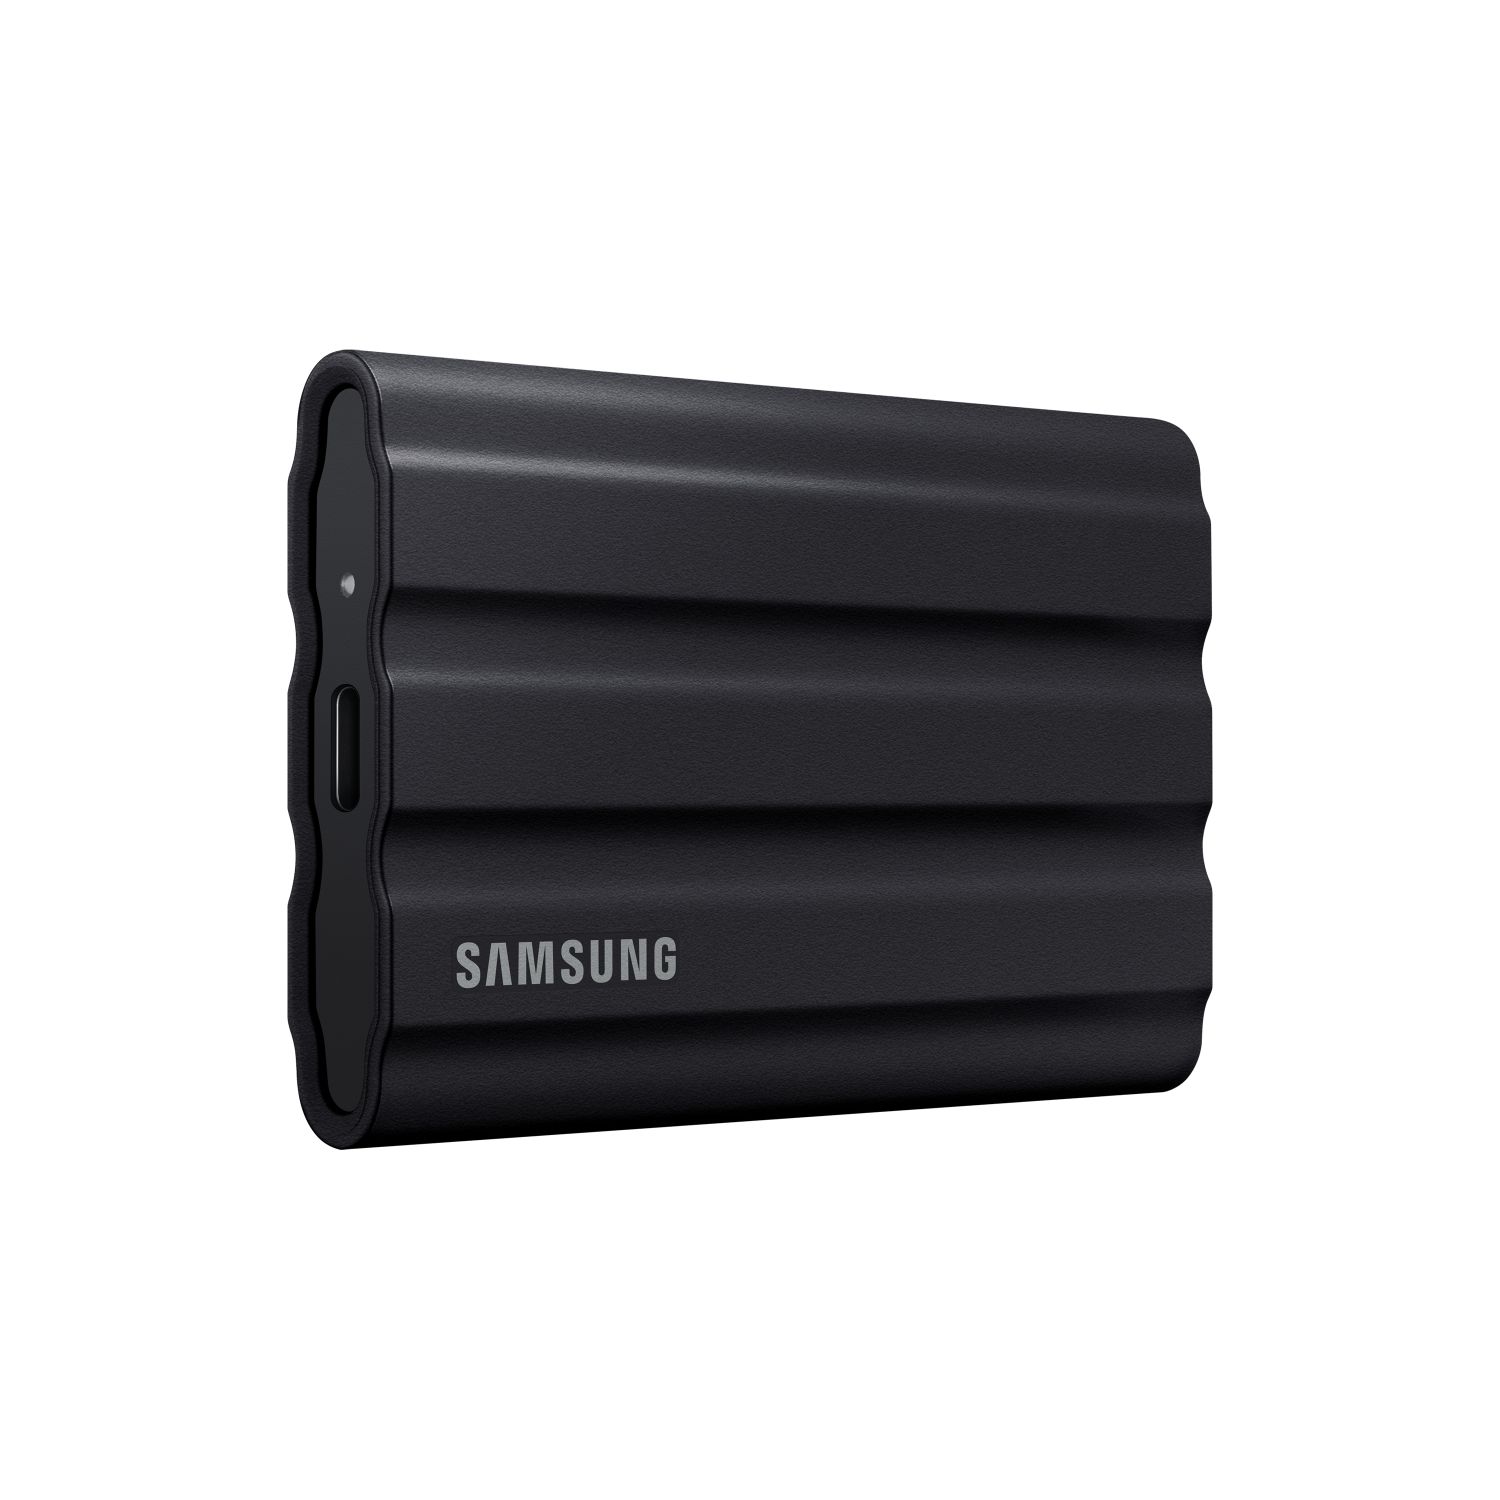 MU-PE1T0S/EU - SSD Samsung T7 Shield 1Tb USB3.2 Negro (MU-PE1T0S/EU)